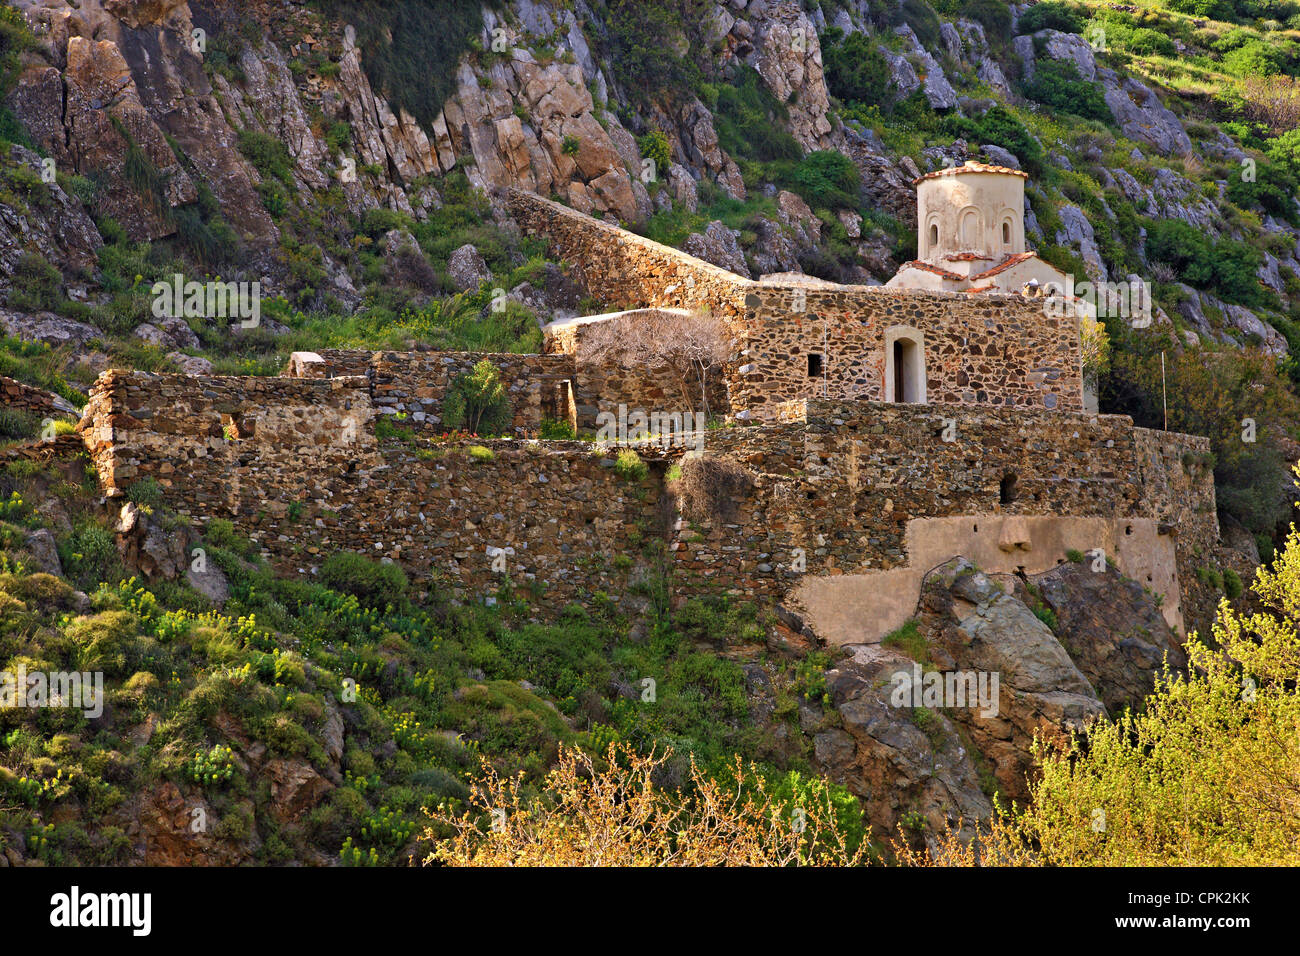 The Panagia Agiogalousaina monastery, close to Agio Gala village, Chios island, Northeast Aegean, Greece. Stock Photo